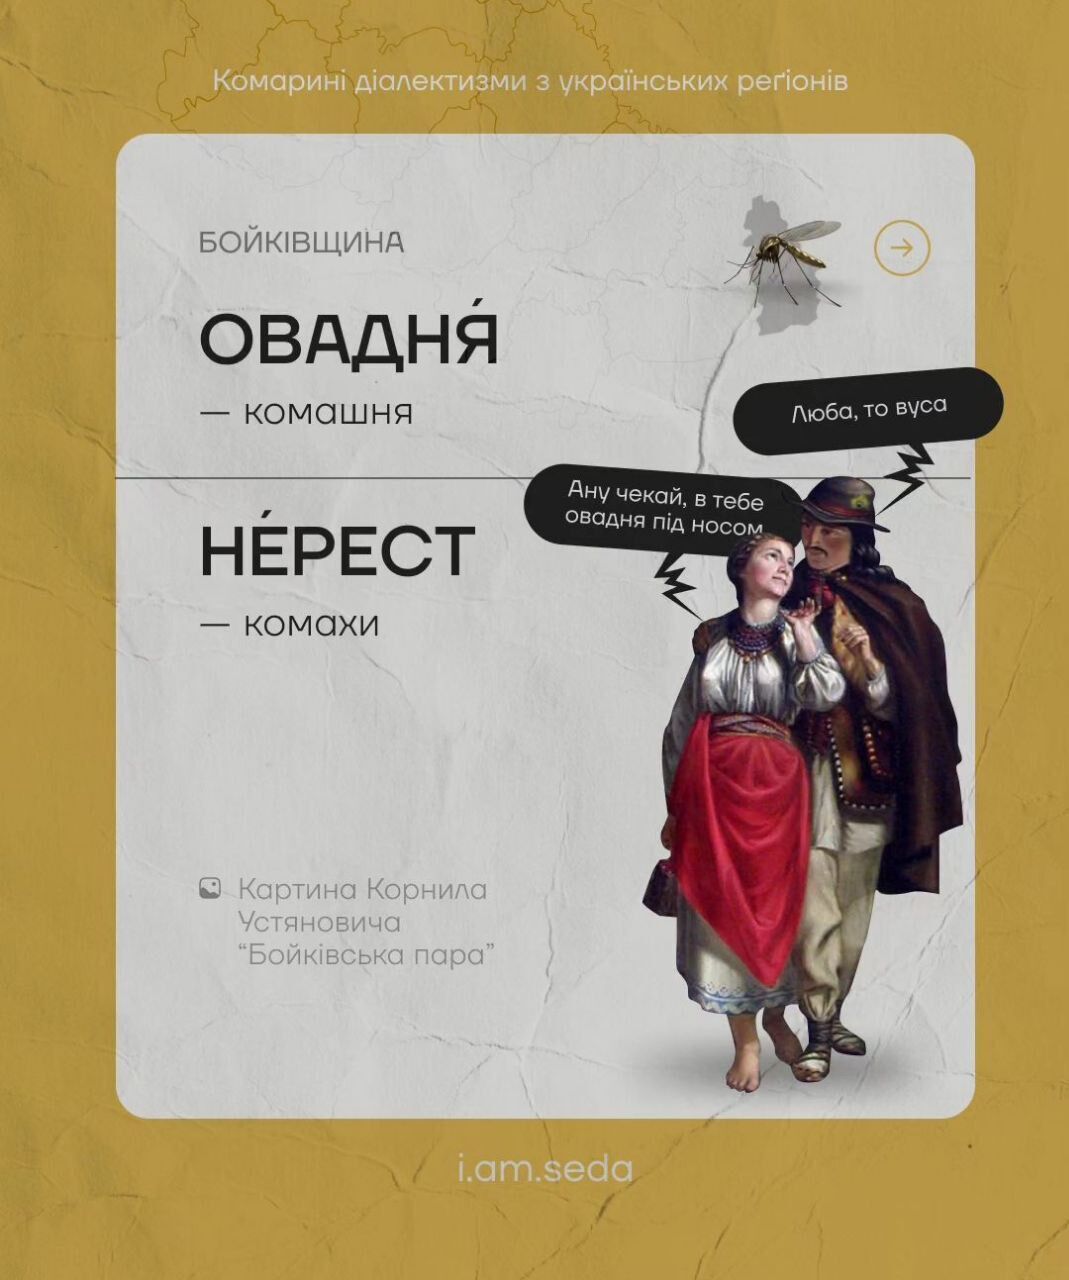 Цинцар, овадня и лярва: что общего в украинских ''комариных диалектизмах''